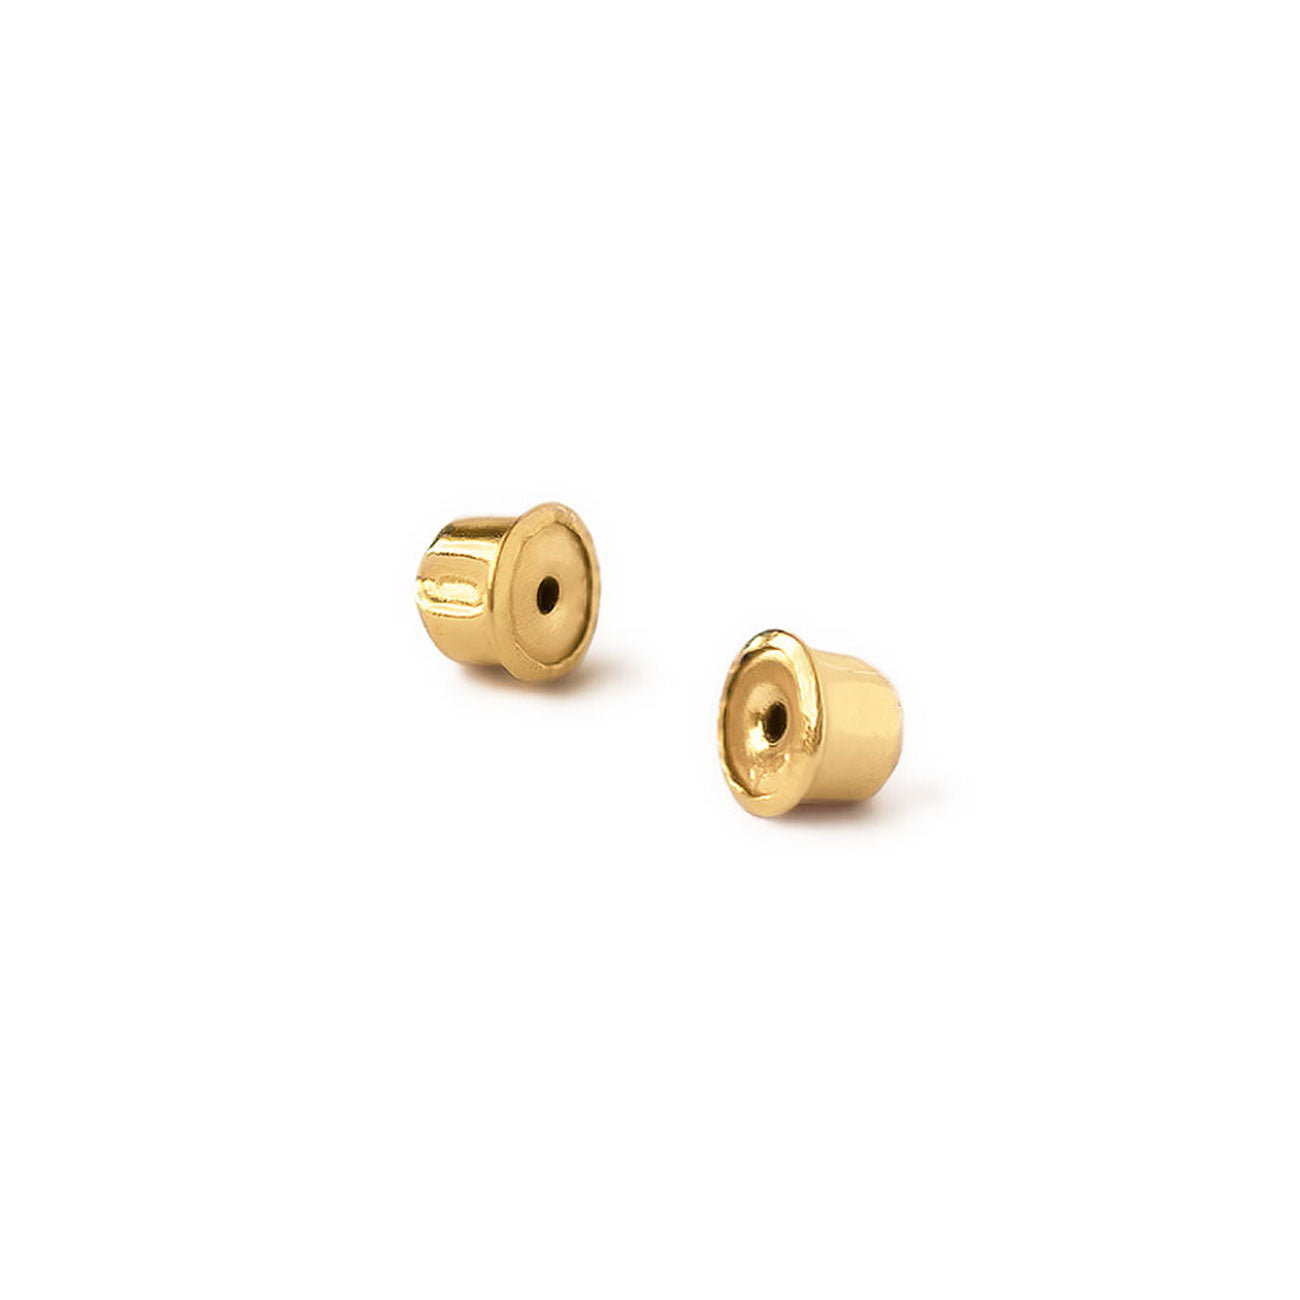 14k Gold Earring Backs